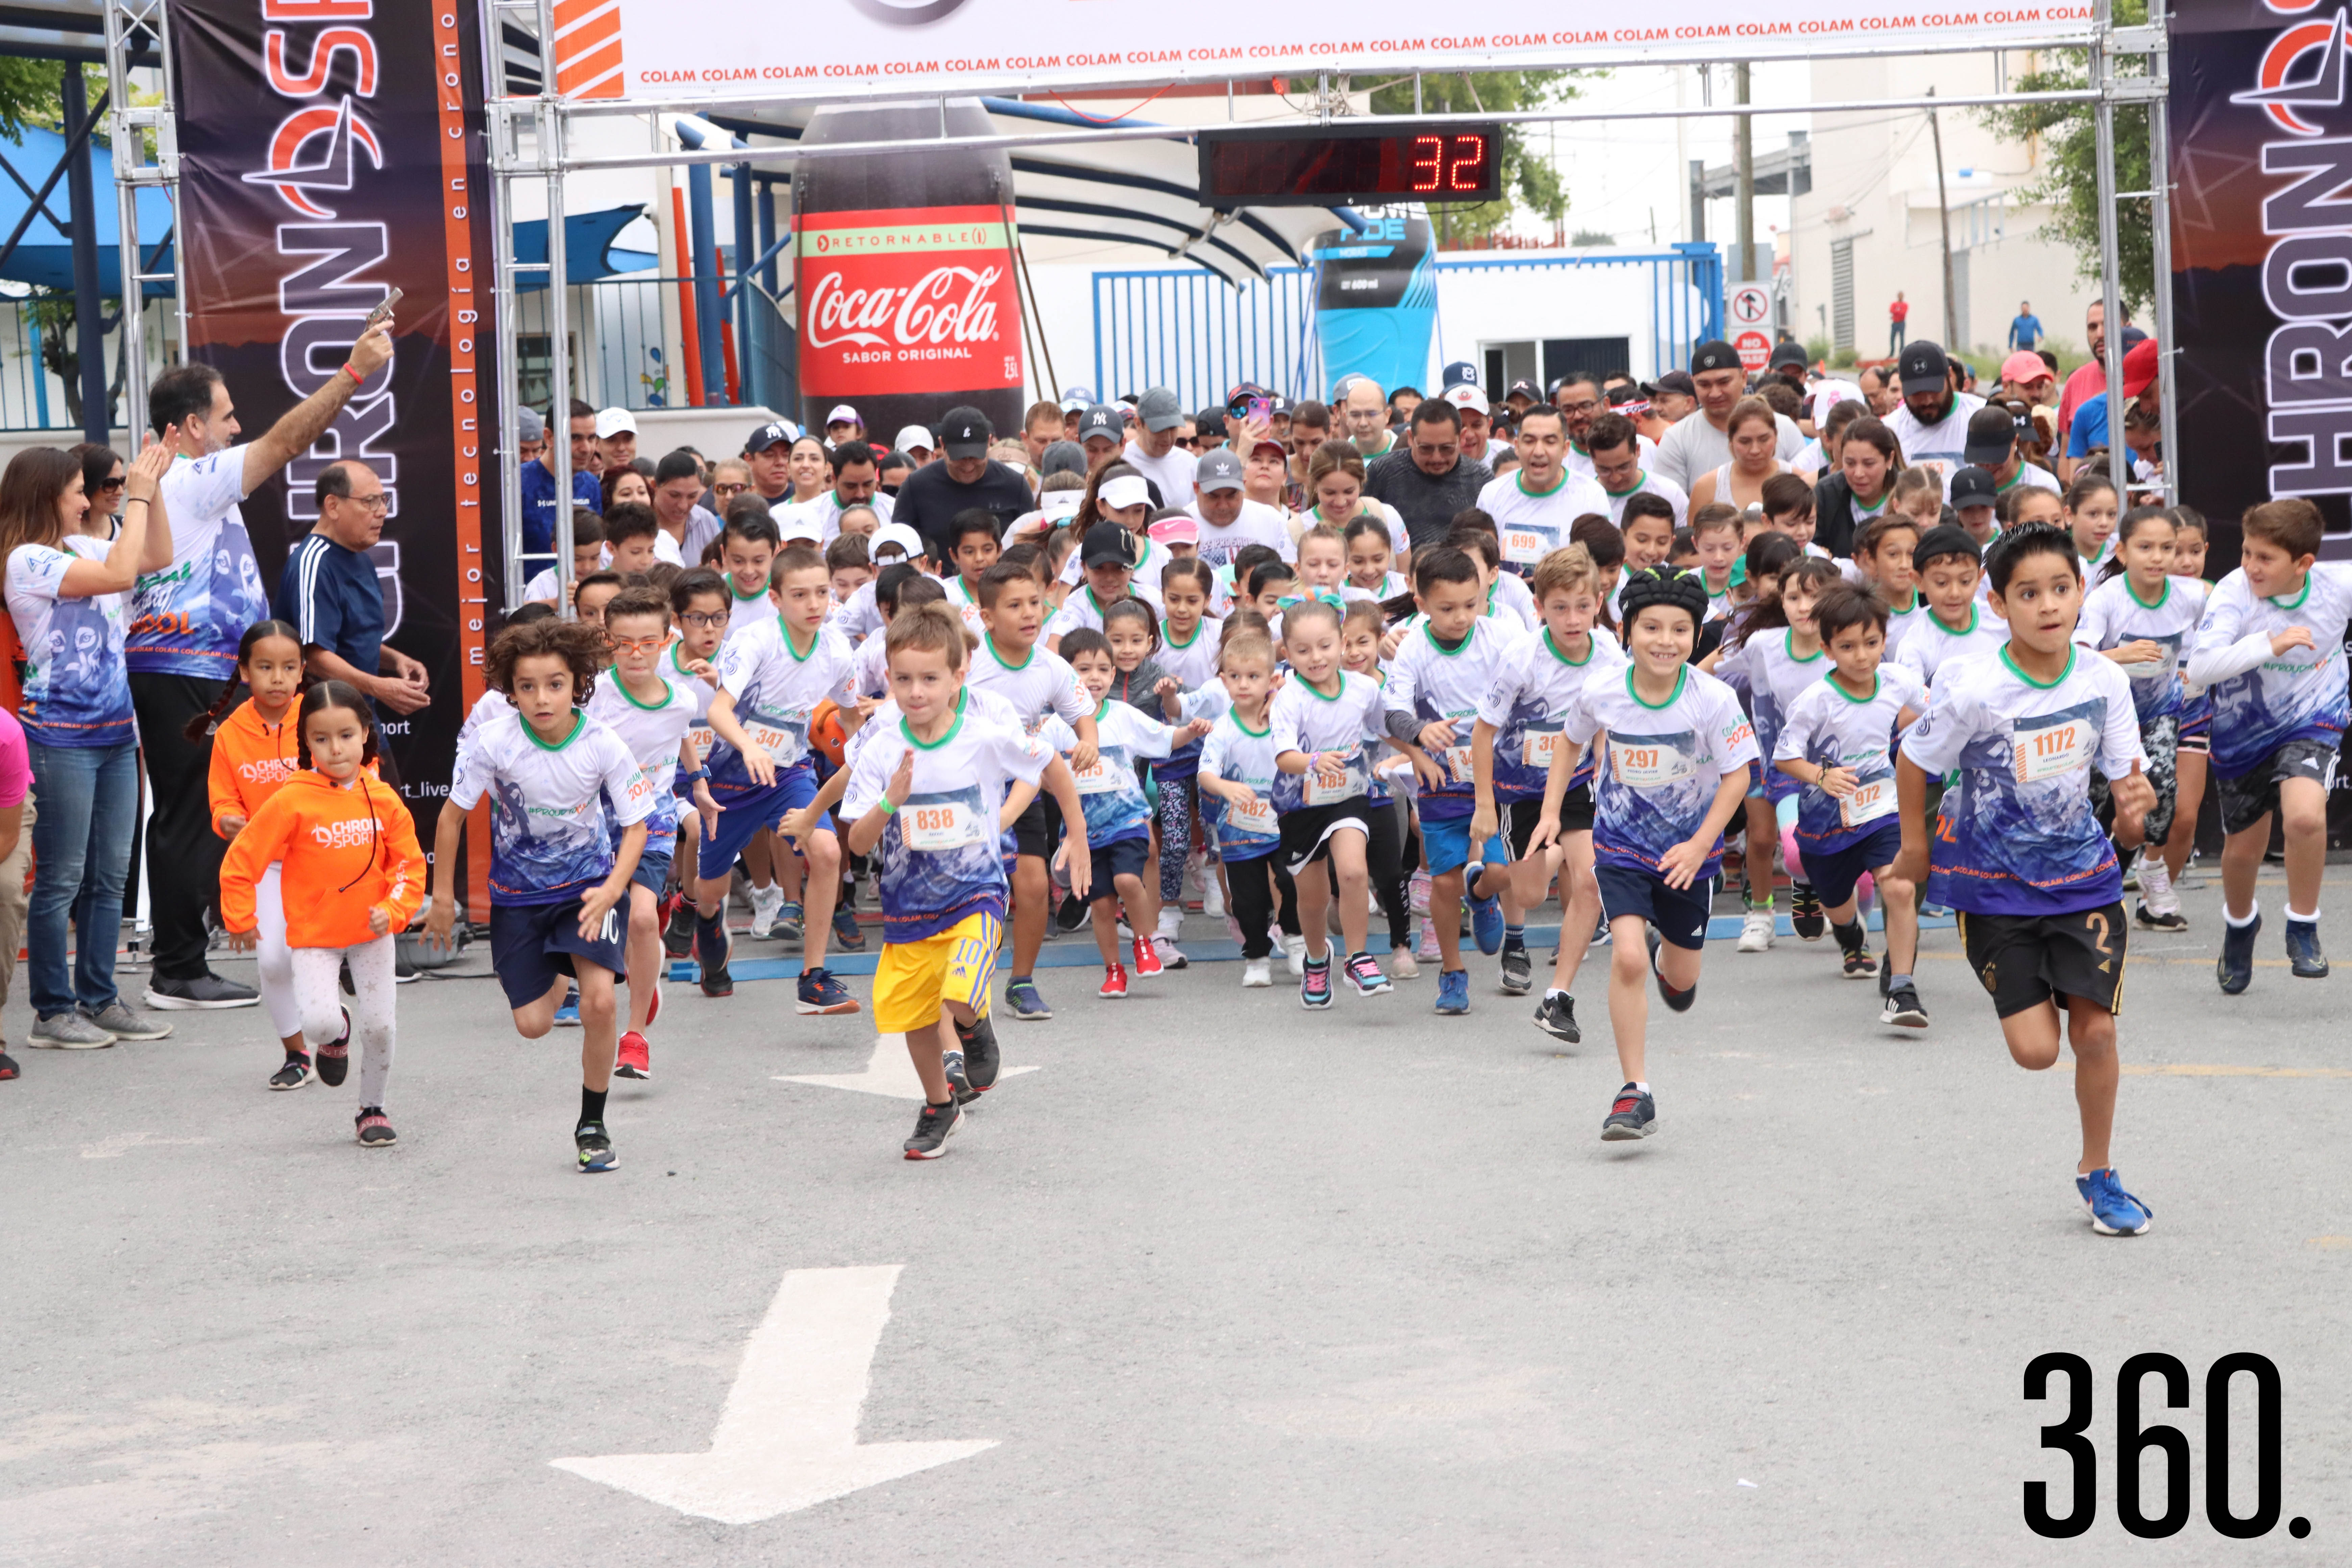 Los alumnos corrieron 1 km y 5 km.